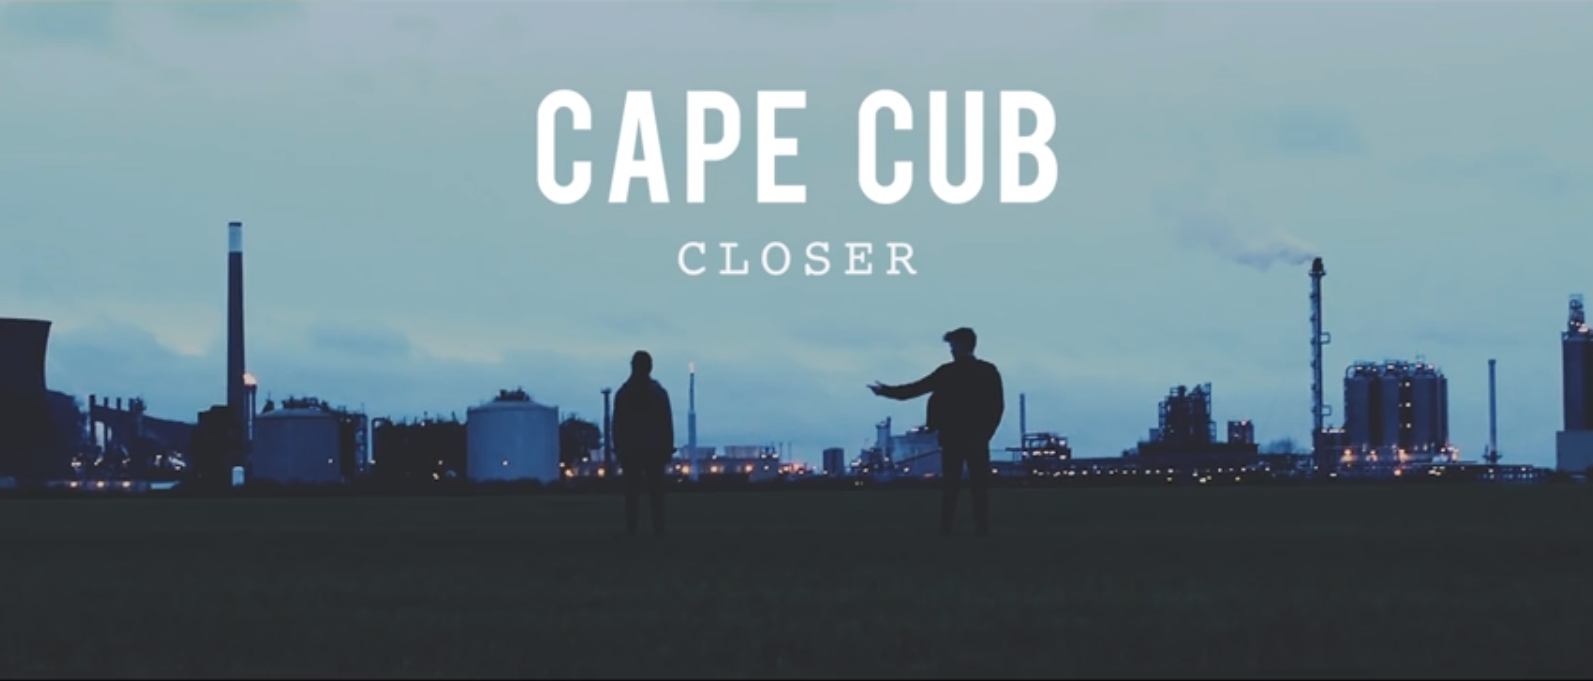 Screenshot from Cape Cub's "Closer" music video